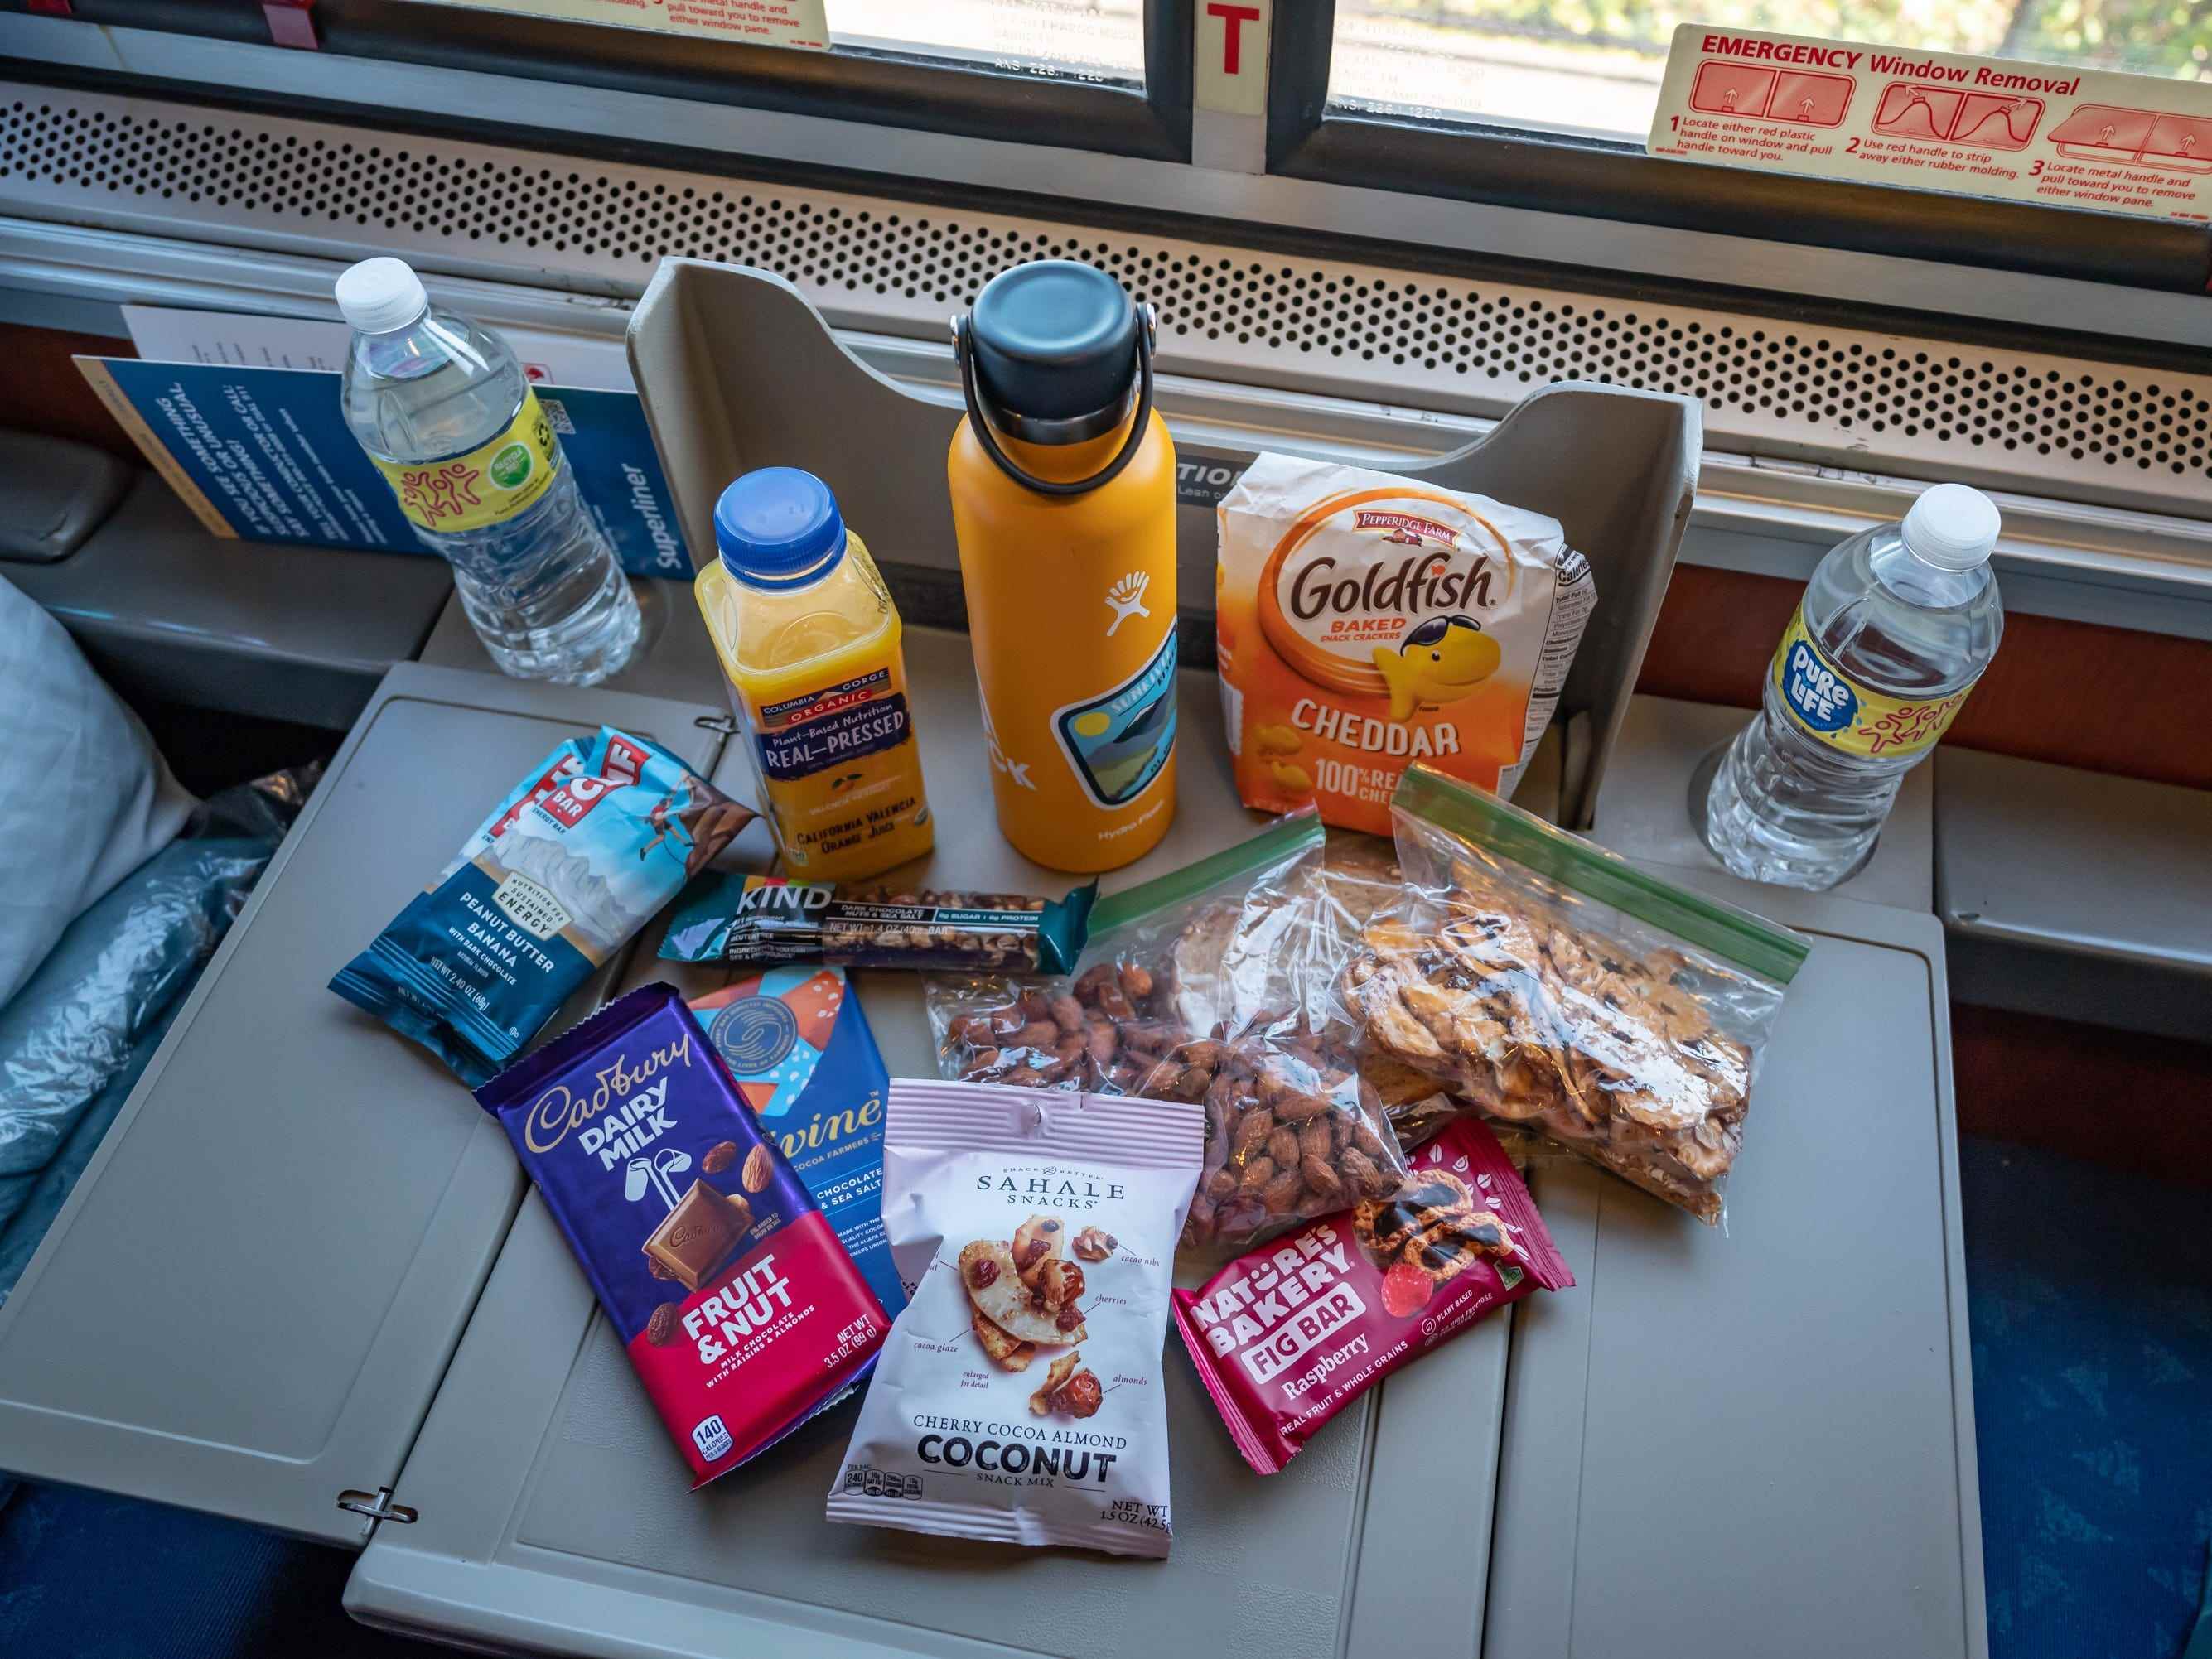 Ausziehbares Tablett bei Amtrak, gefüllt mit Wasserflaschen, Goldfisch-Crackern, Schokolade, Müsli, Brezeln und anderen vorverpackten Snacks